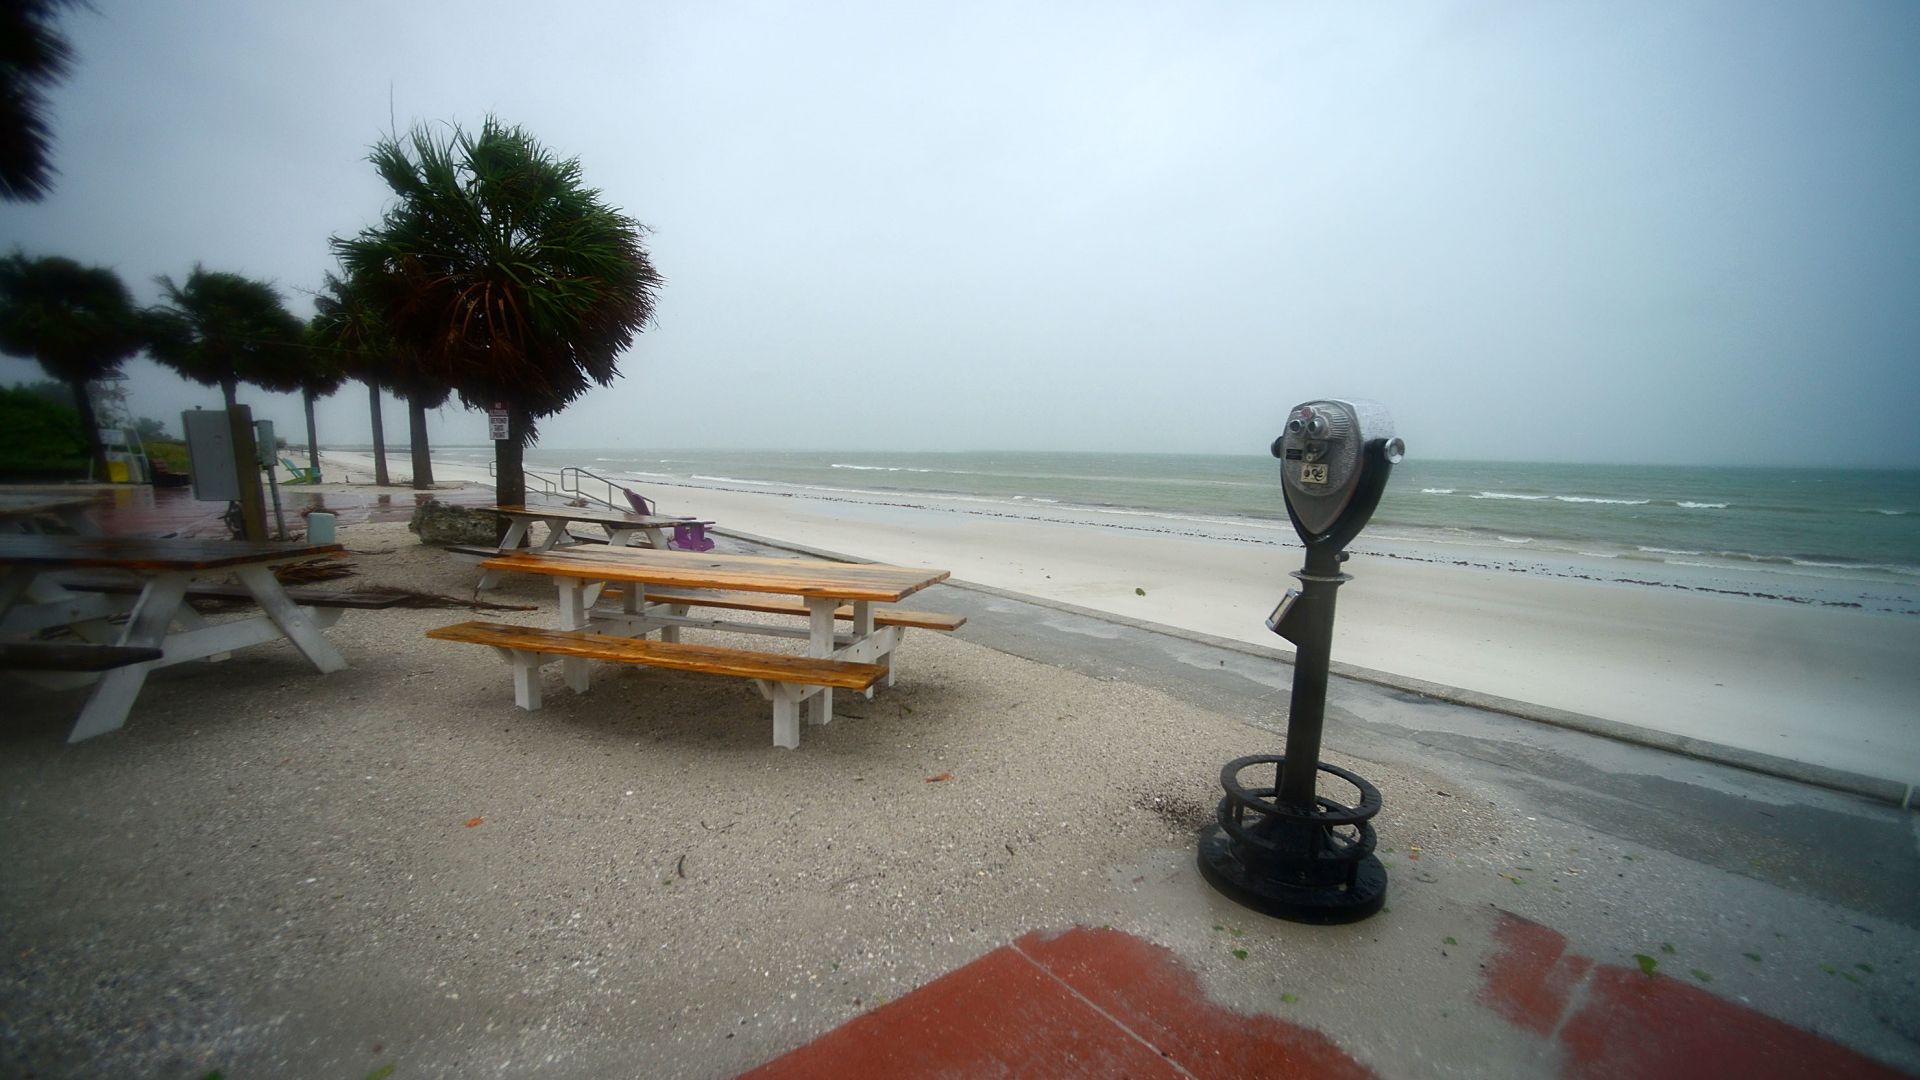 Palmen wehen im Sturm am leeren Strand von St. Petersburg, Florida